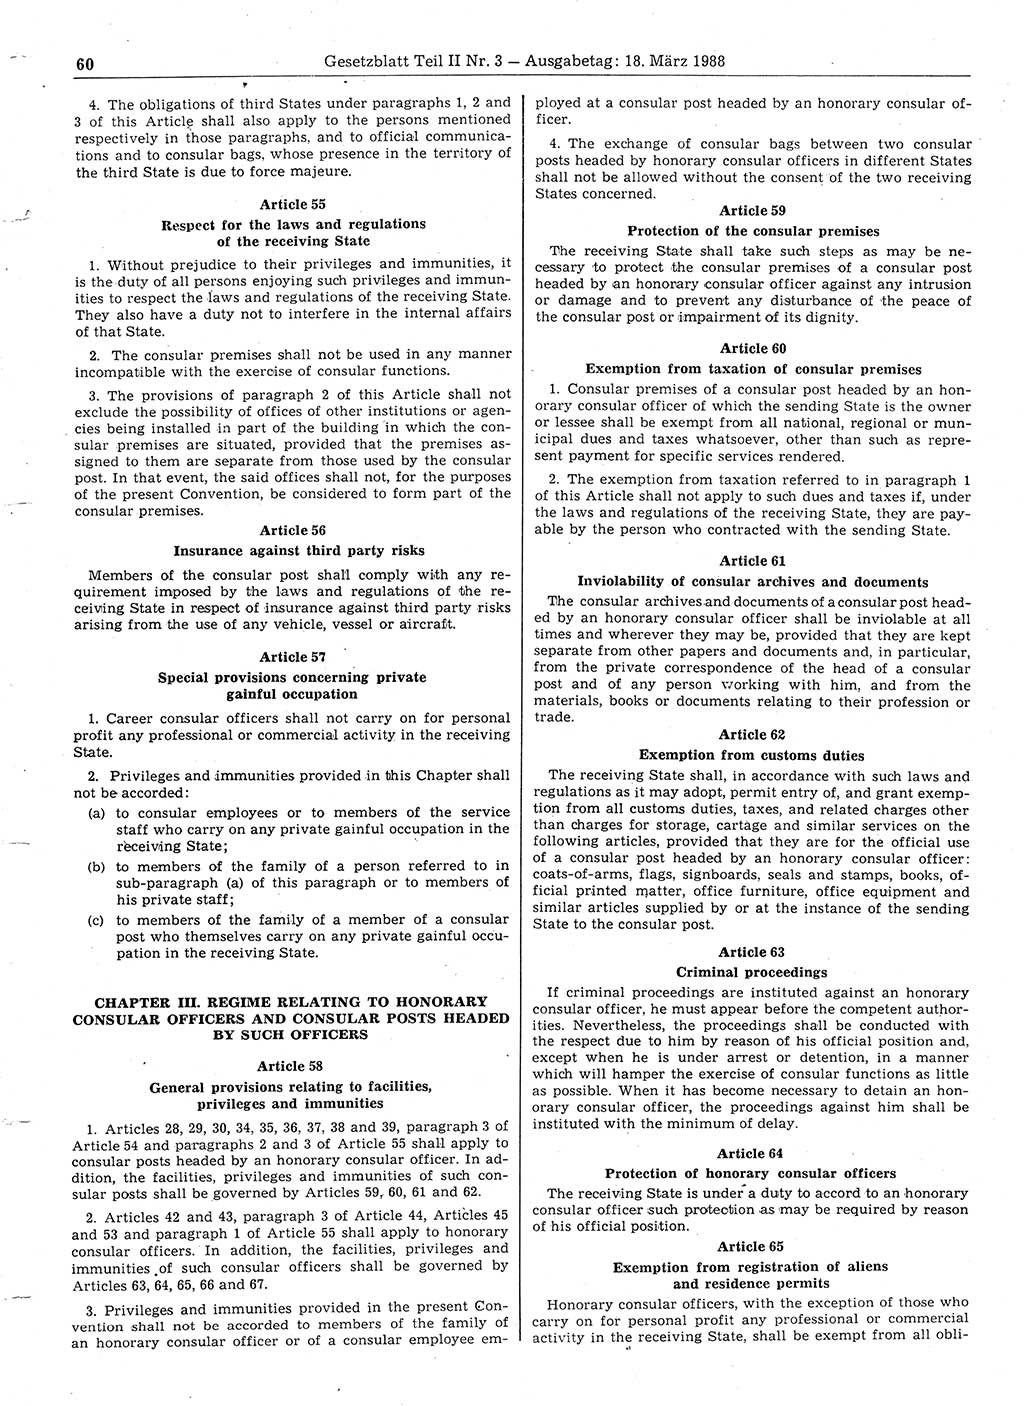 Gesetzblatt (GBl.) der Deutschen Demokratischen Republik (DDR) Teil ⅠⅠ 1988, Seite 60 (GBl. DDR ⅠⅠ 1988, S. 60)